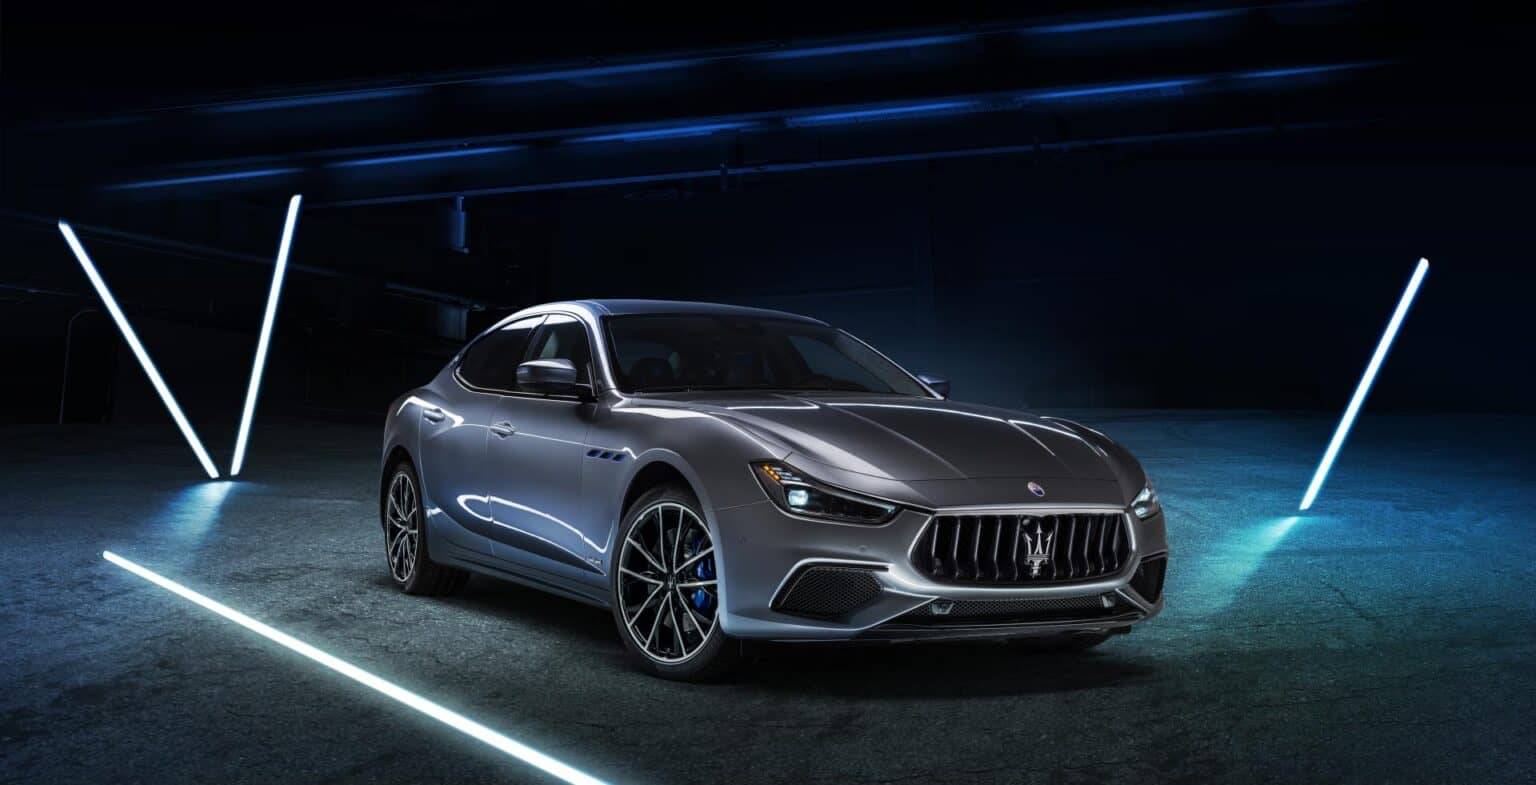 Maserati Ghibli Hybrid - Der erste Schritt in Richtung E-Mobilität